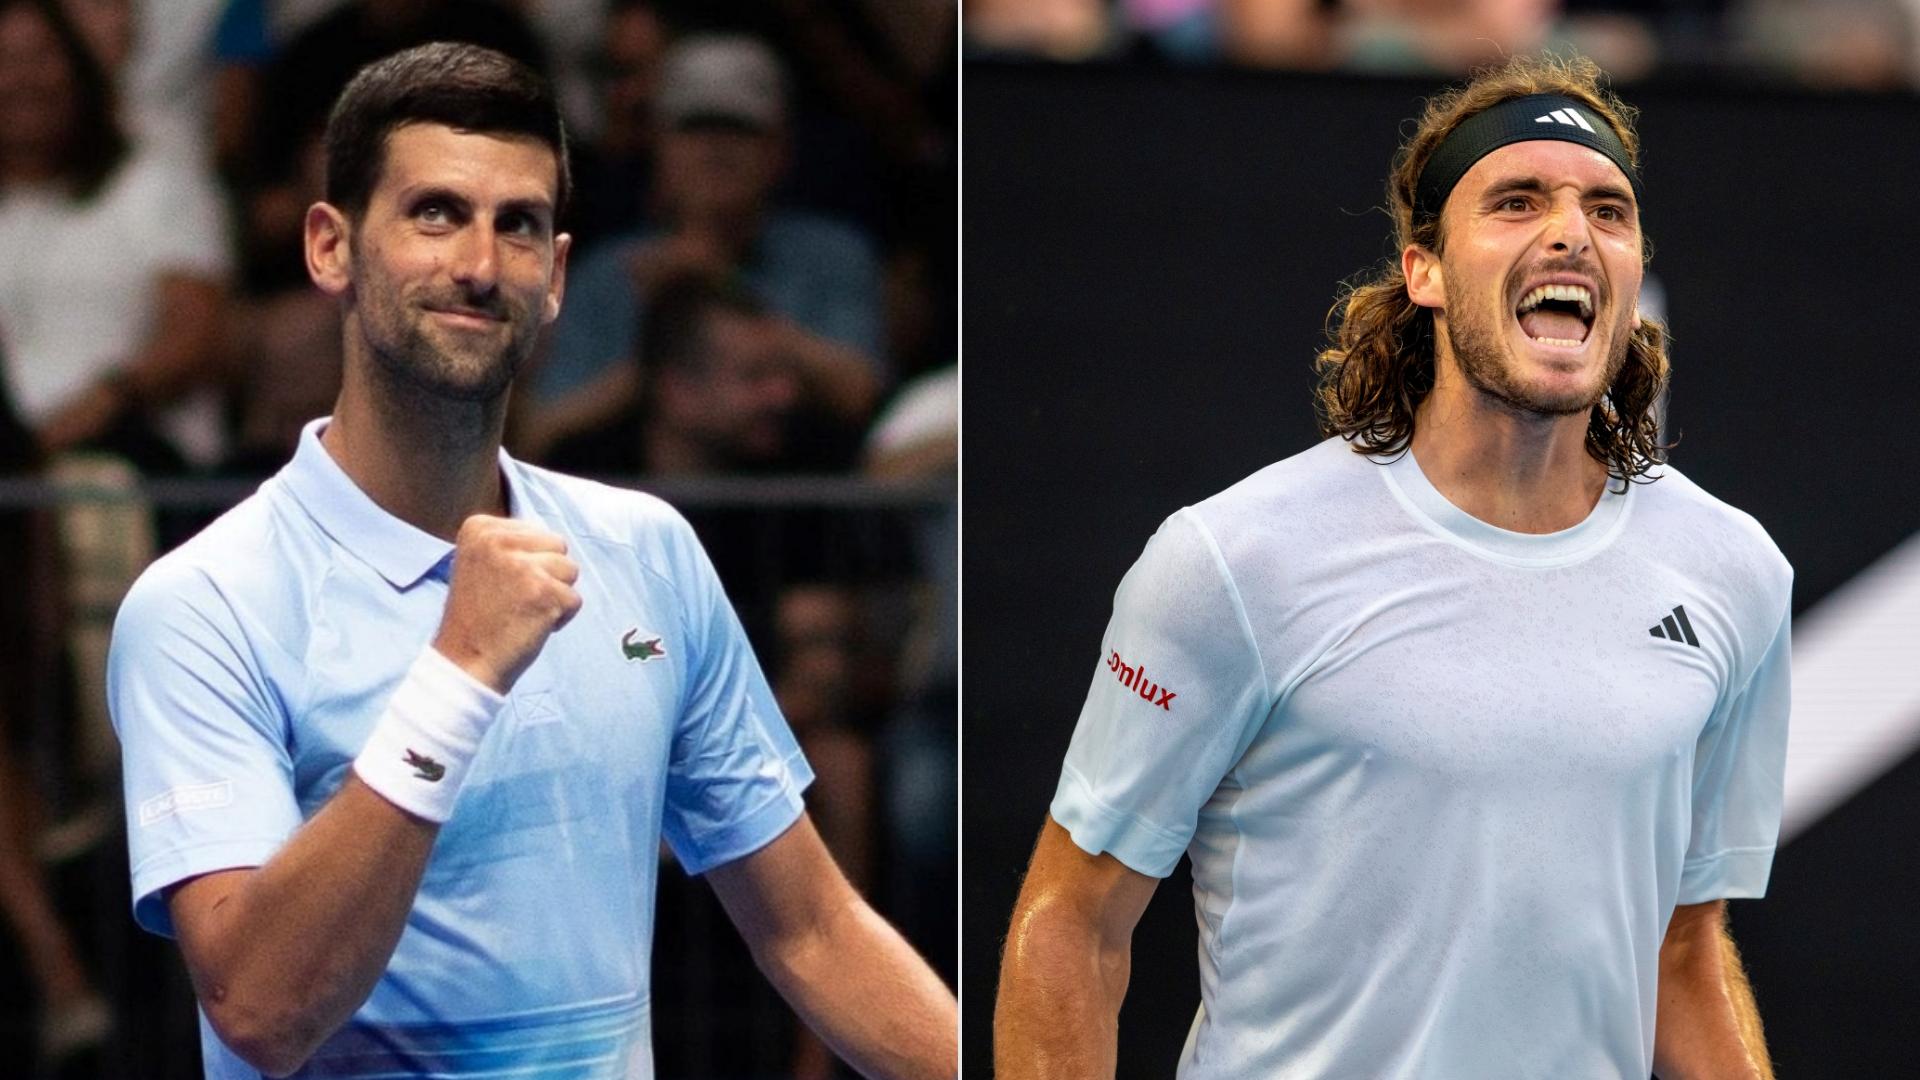 Australian Open: Djokovics 22-szeres Grand Slam-bajnok és újra világelső